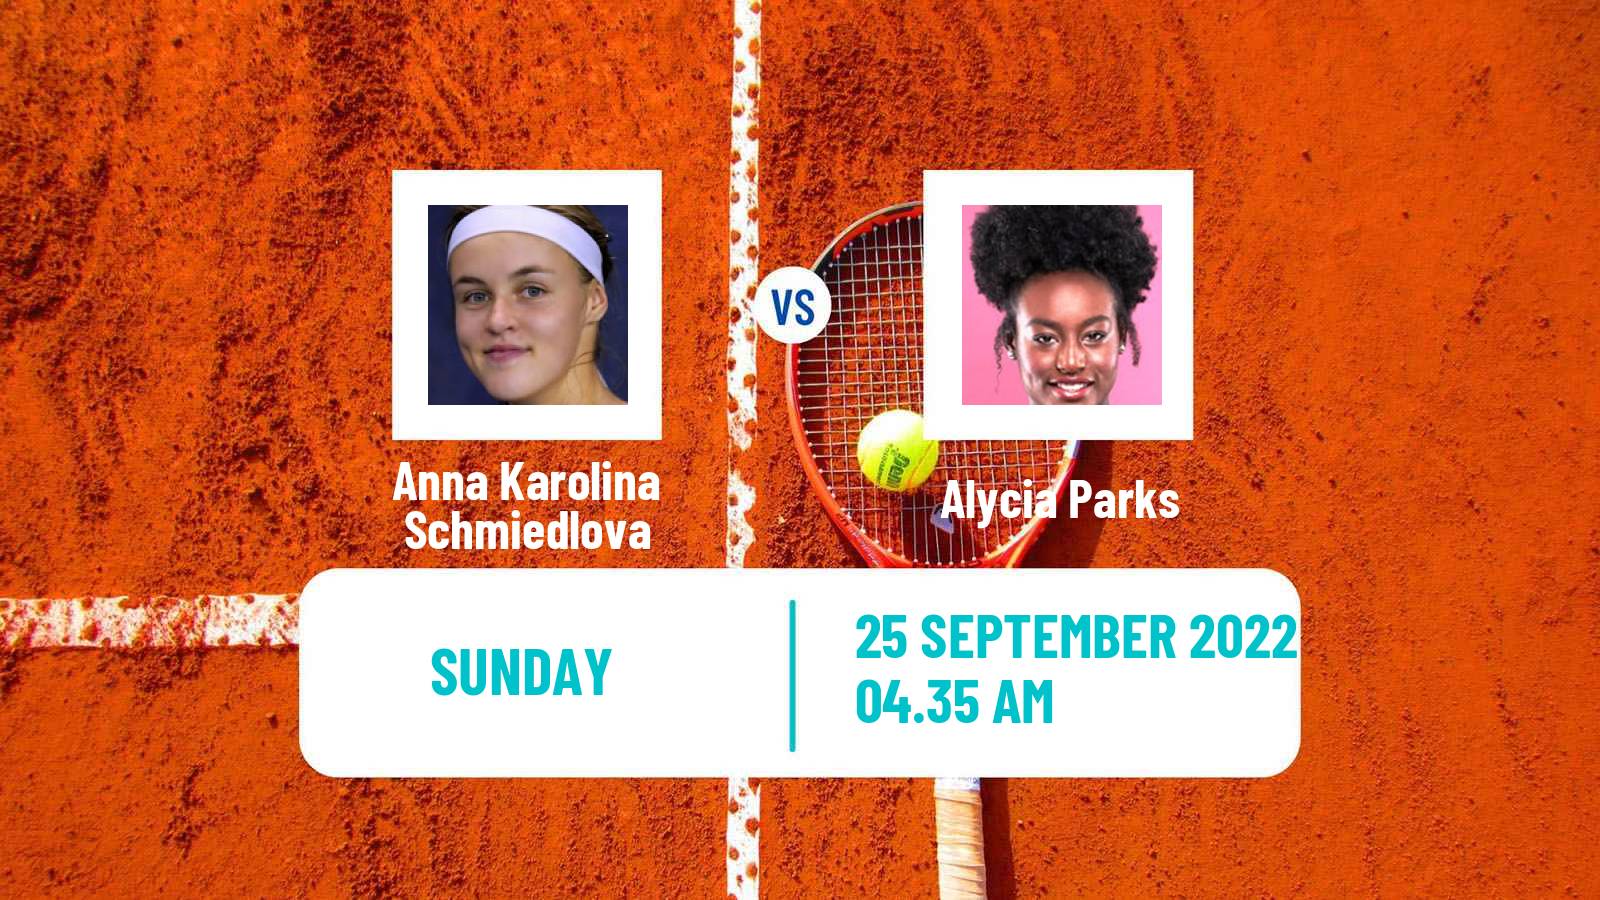 Tennis WTA Parma Anna Karolina Schmiedlova - Alycia Parks